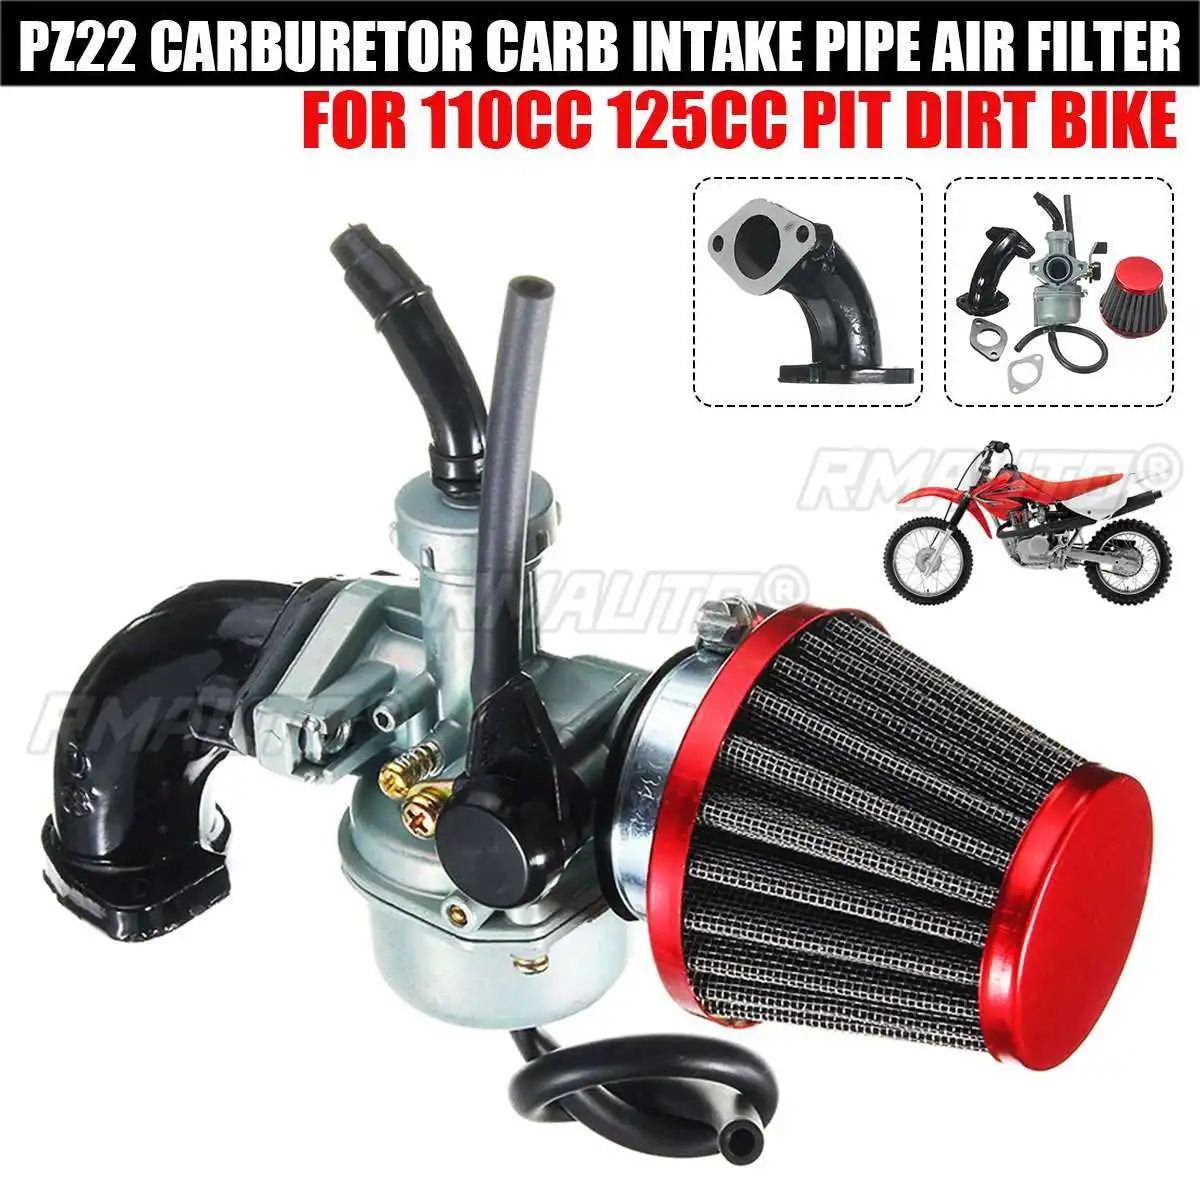 22mm PZ22 Carb için karbüratör hava filtresi emme borusu 110cc 125cc SSR Lifan CRF50 Pit kir bisiklet motosiklet ATV